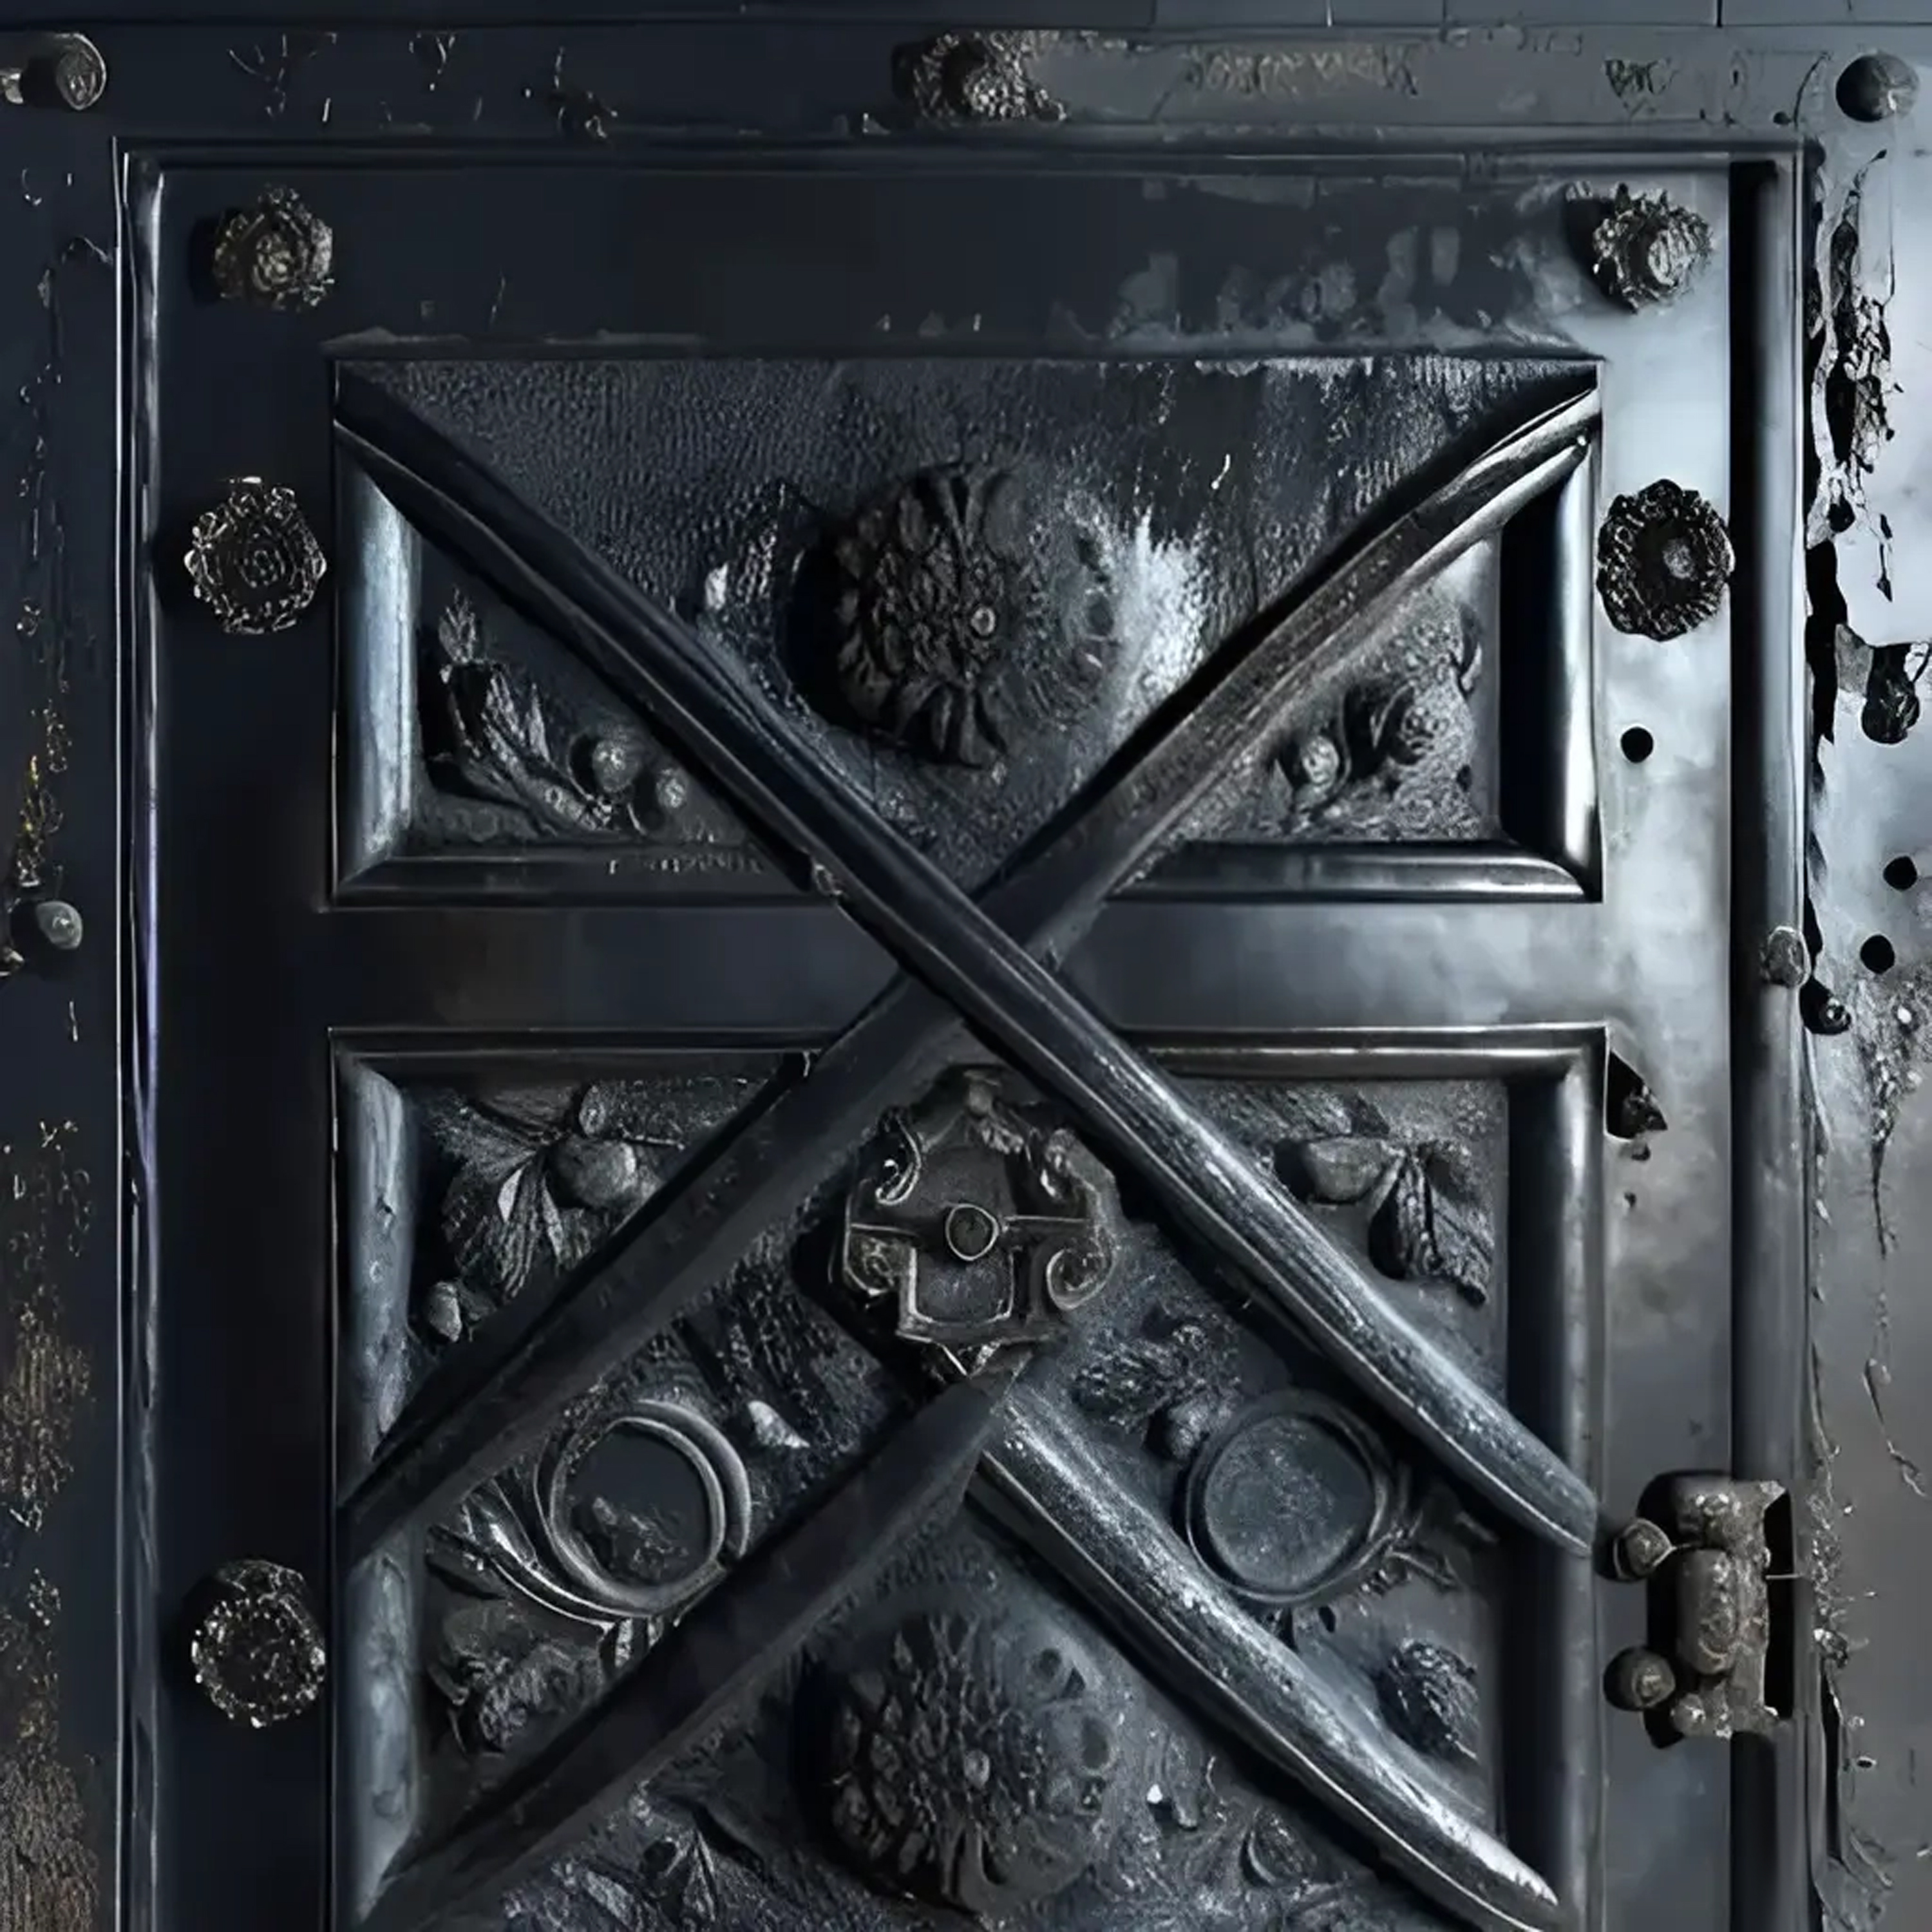 XIII - The door of XNLKX